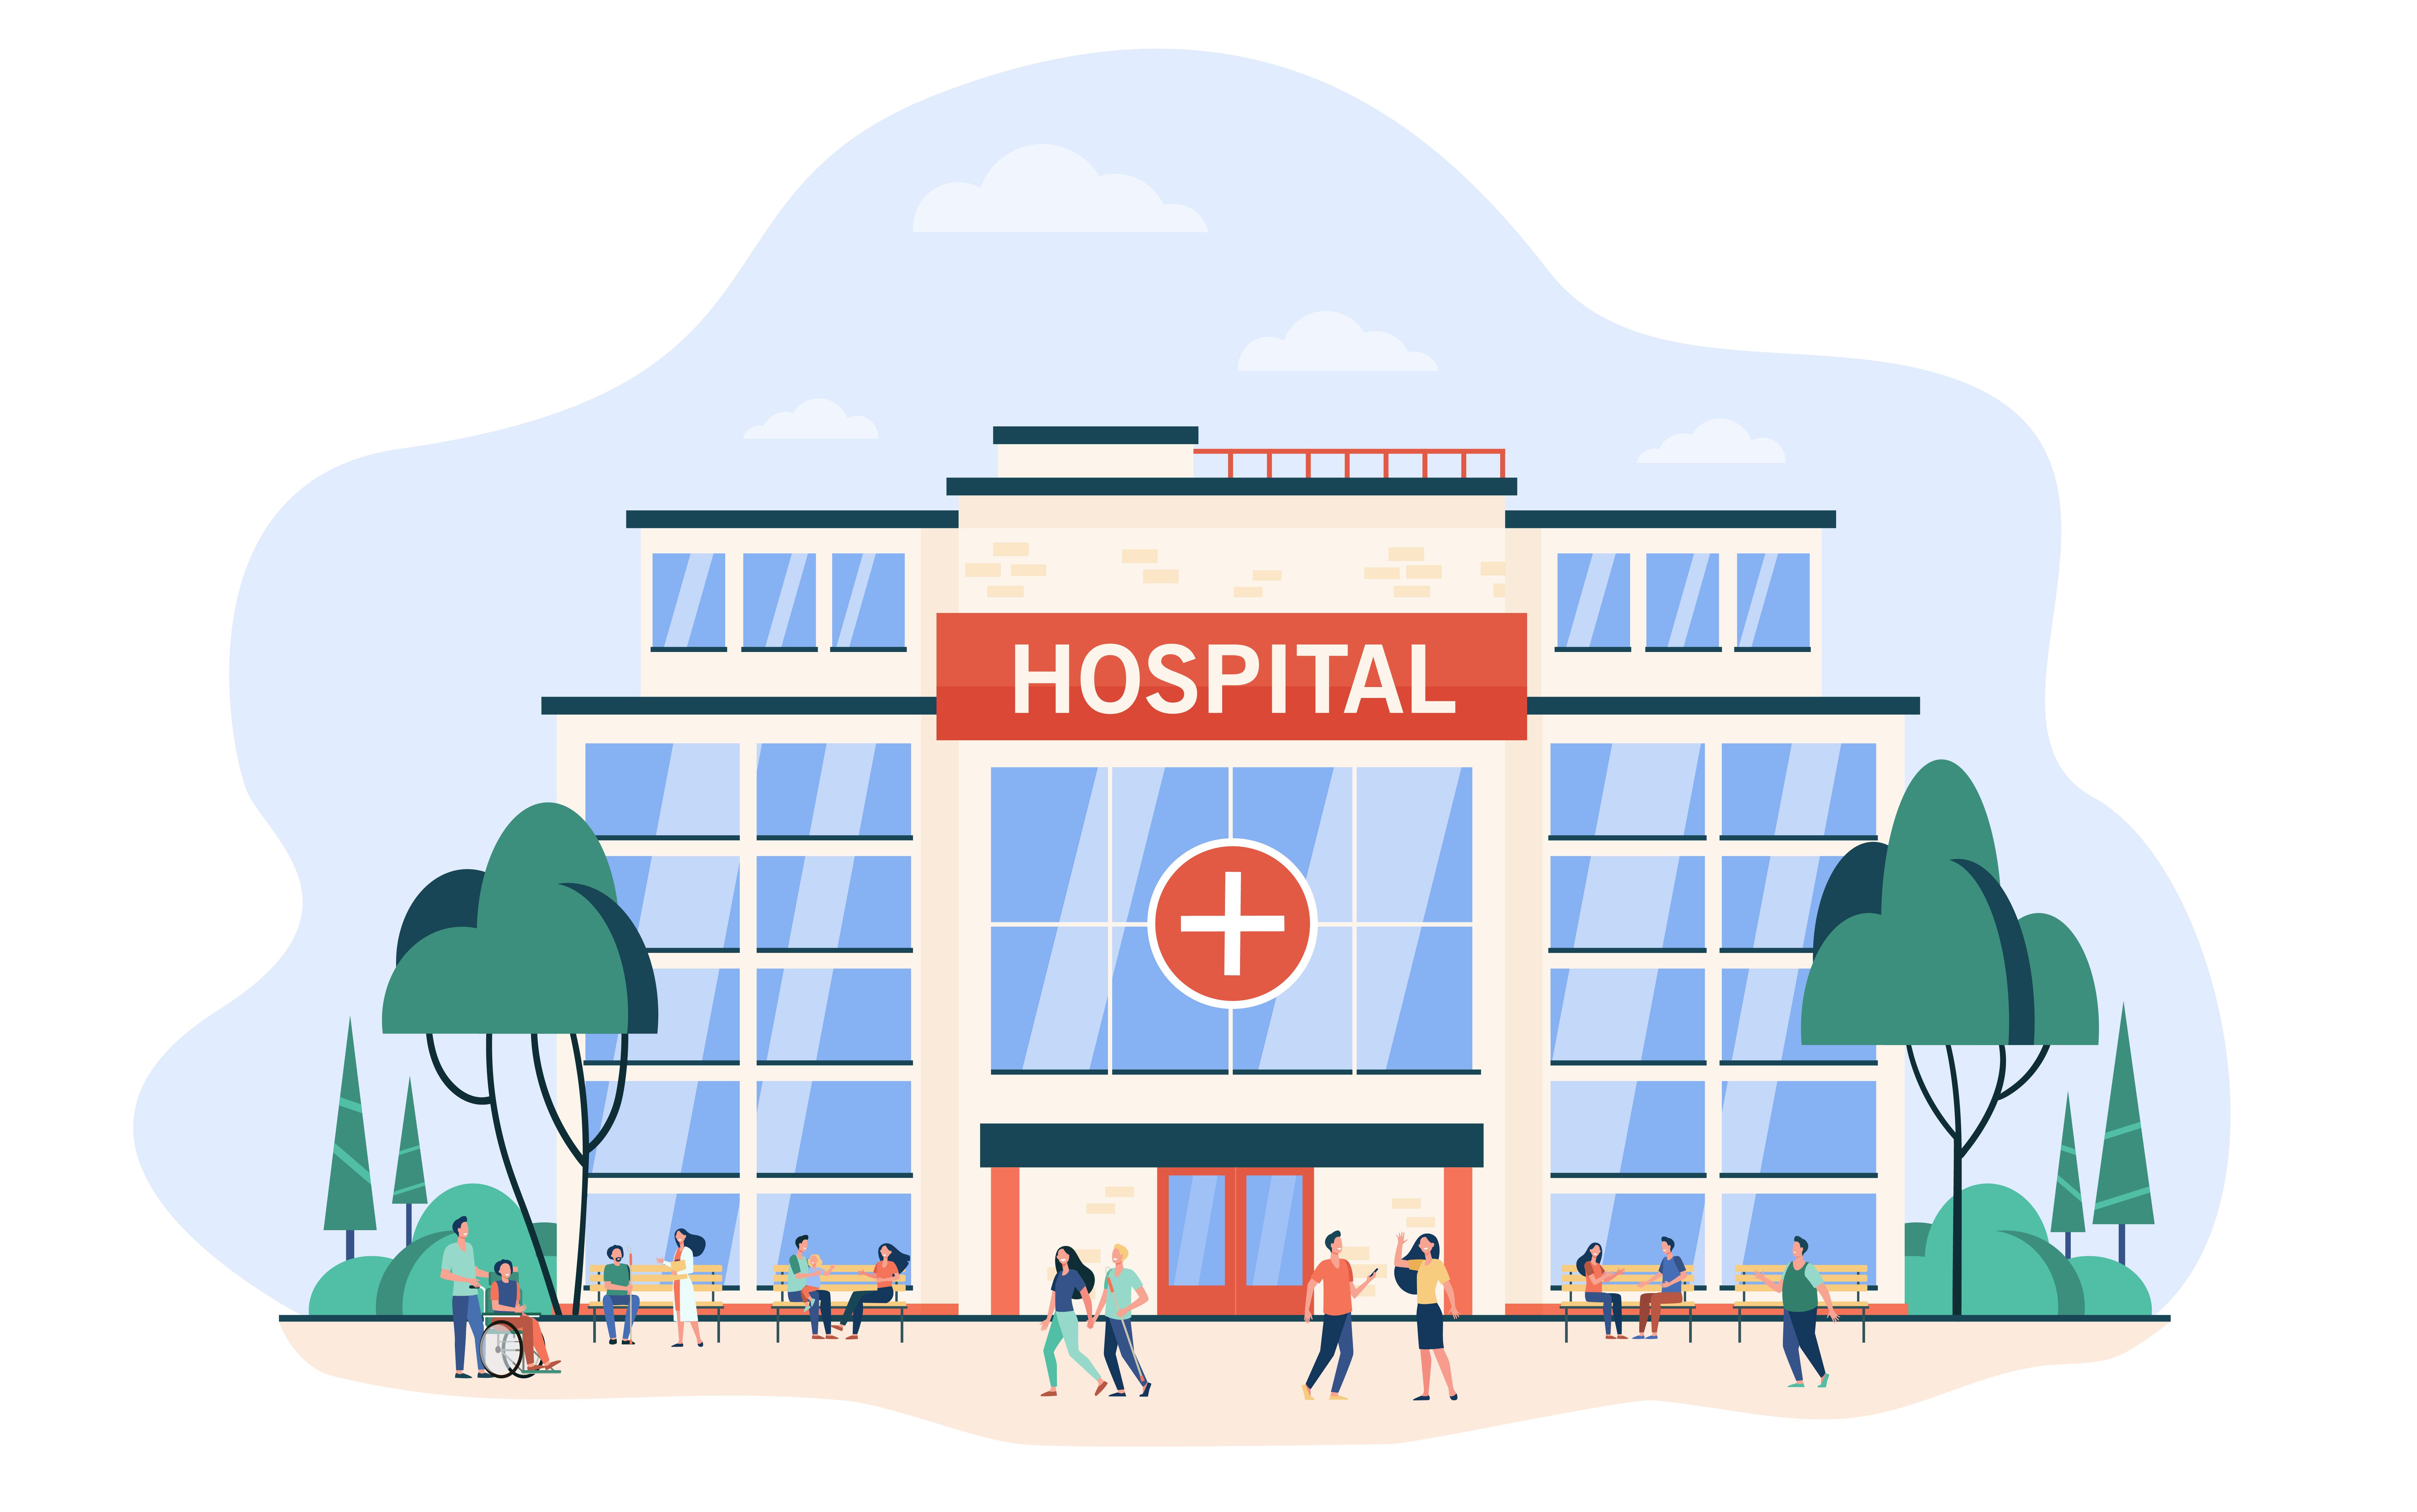 Tổng hợp 10 Bệnh viện được đánh giá tốt nhất tại Hà Nội